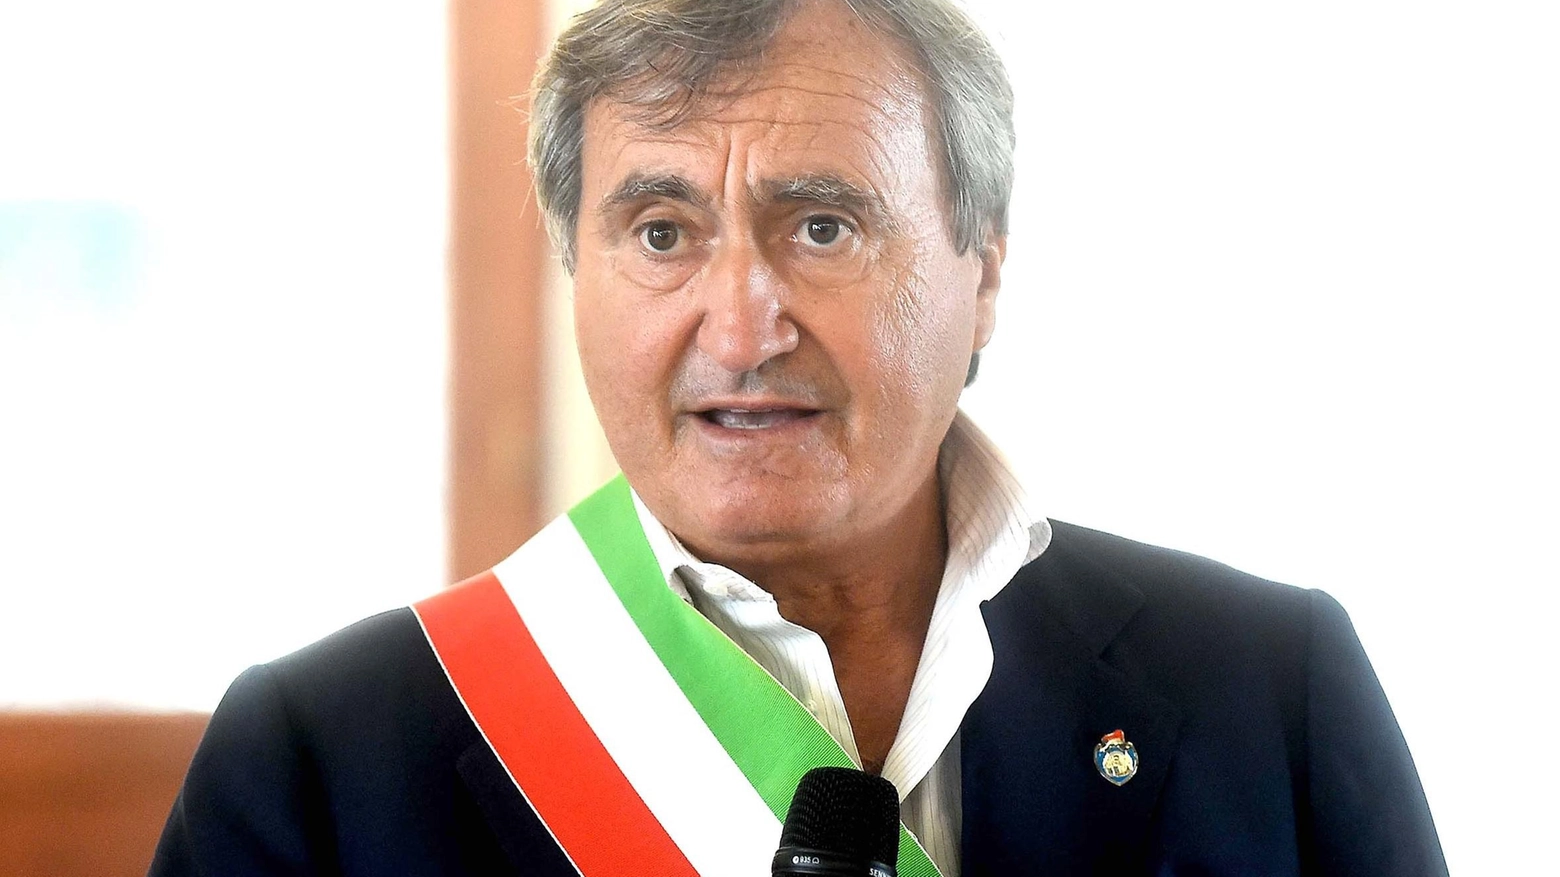 Luigi Brugnaro, 59 anni, è sindaco di Venezia dal 2015